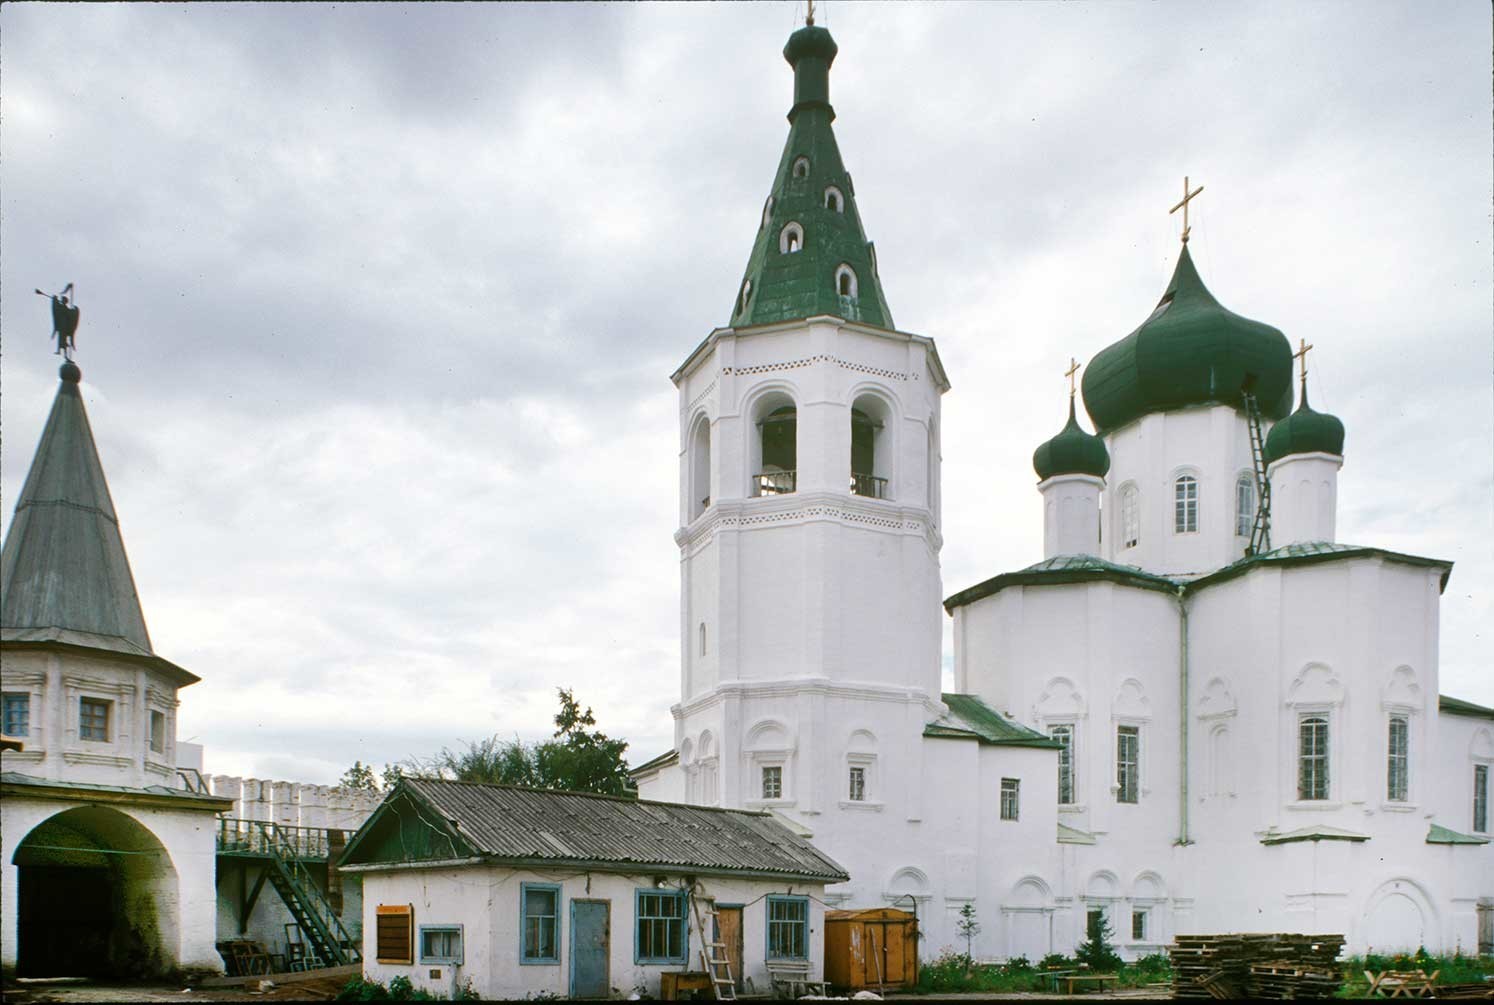 Monastère de la Trinité. Porte sud, clocher, église des Saints Pierre et Paul. 29 août 1999